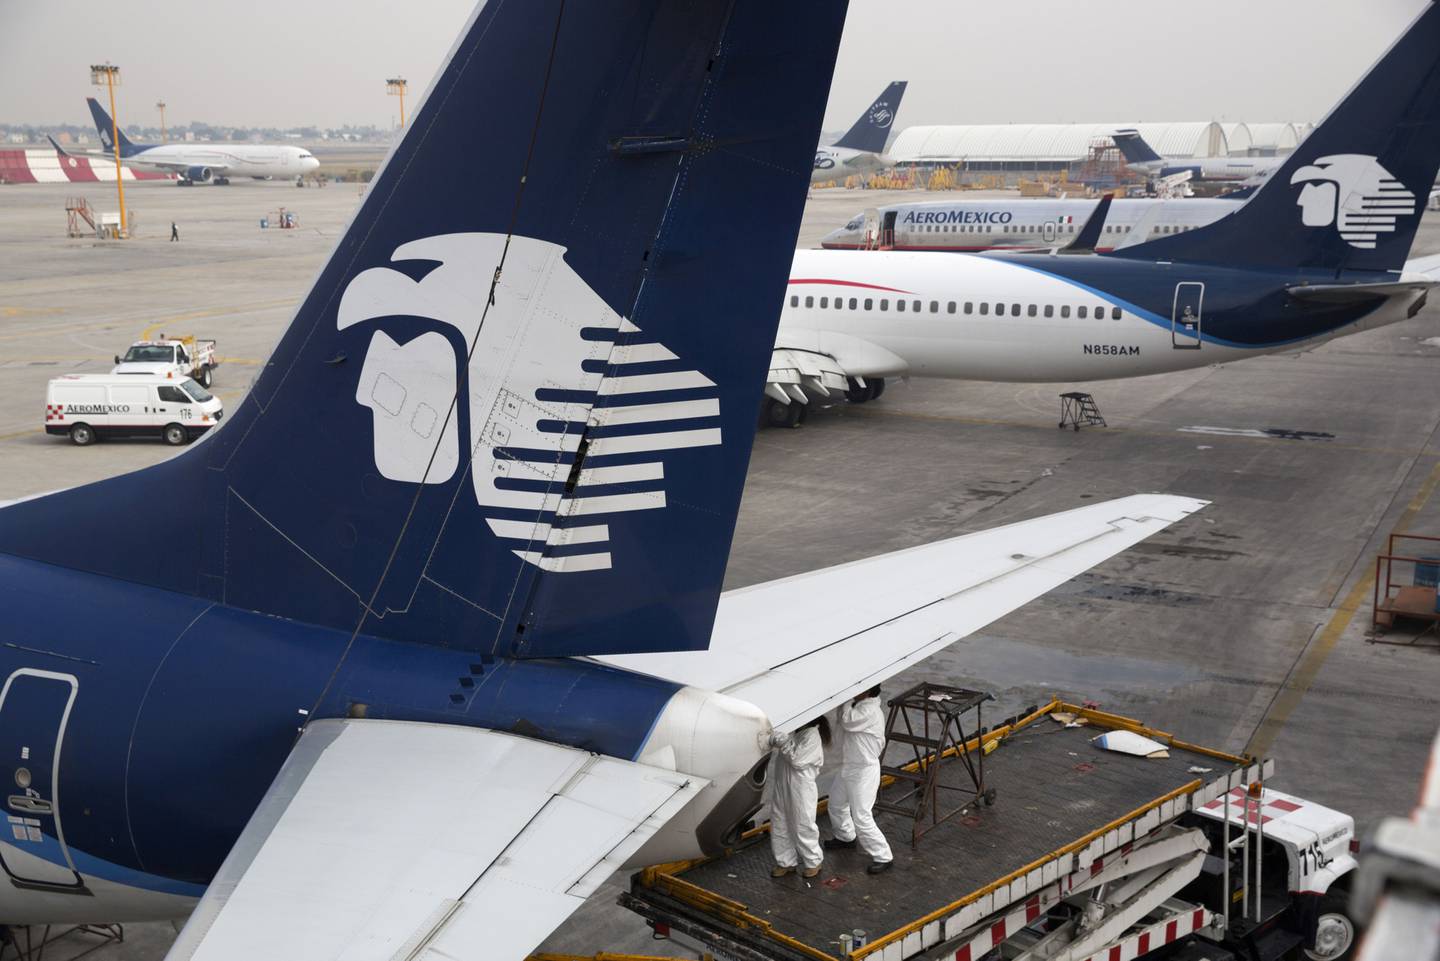 En febrero, Aeroméxico anunció sus intenciones de operar en esa terminal aérea con rutas hacia Mérida y Villahermosa